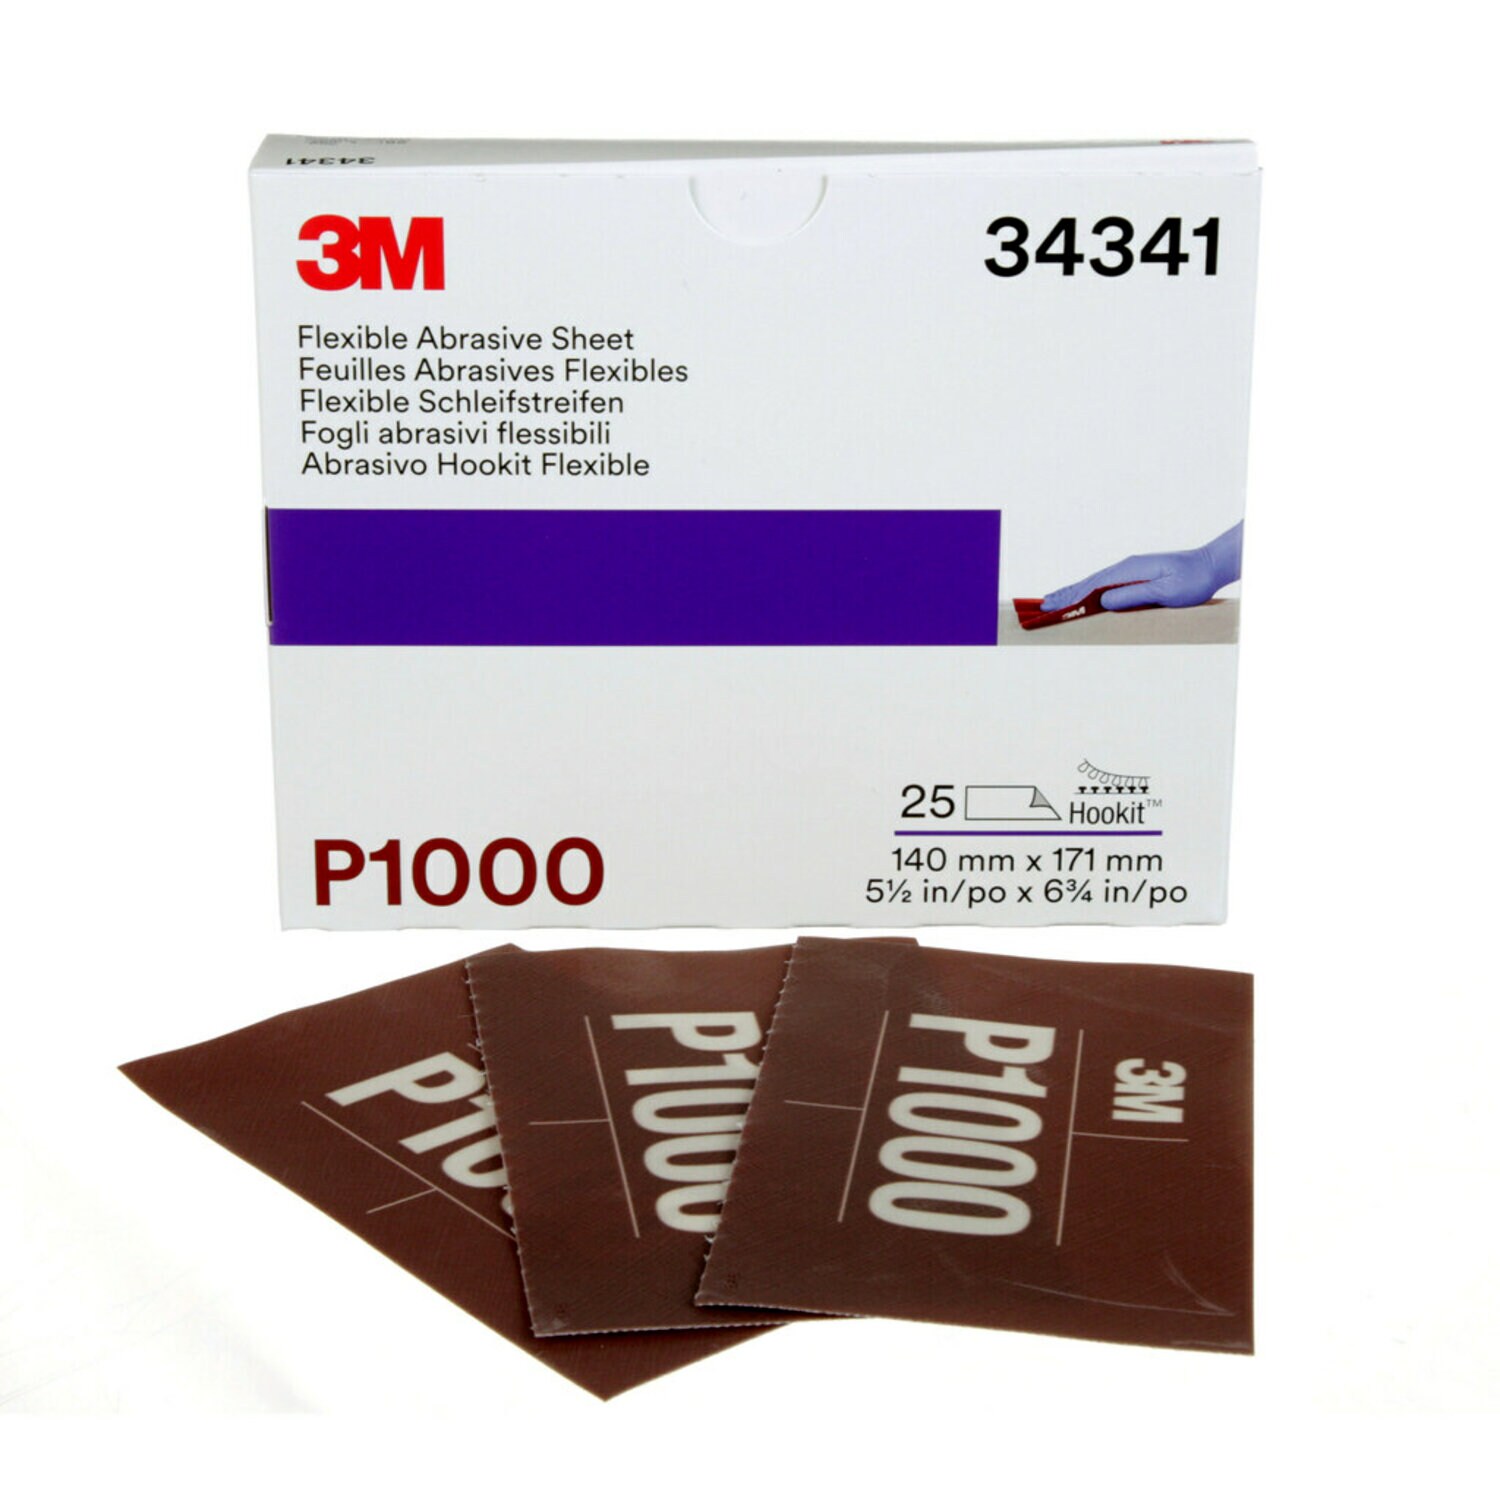 7100010569 - 3M Hookit Flexible Abrasive Sheet, 34341, P1000, 5.5 in x 6.8 in, 25
sheets per carton, 5 cartons per case